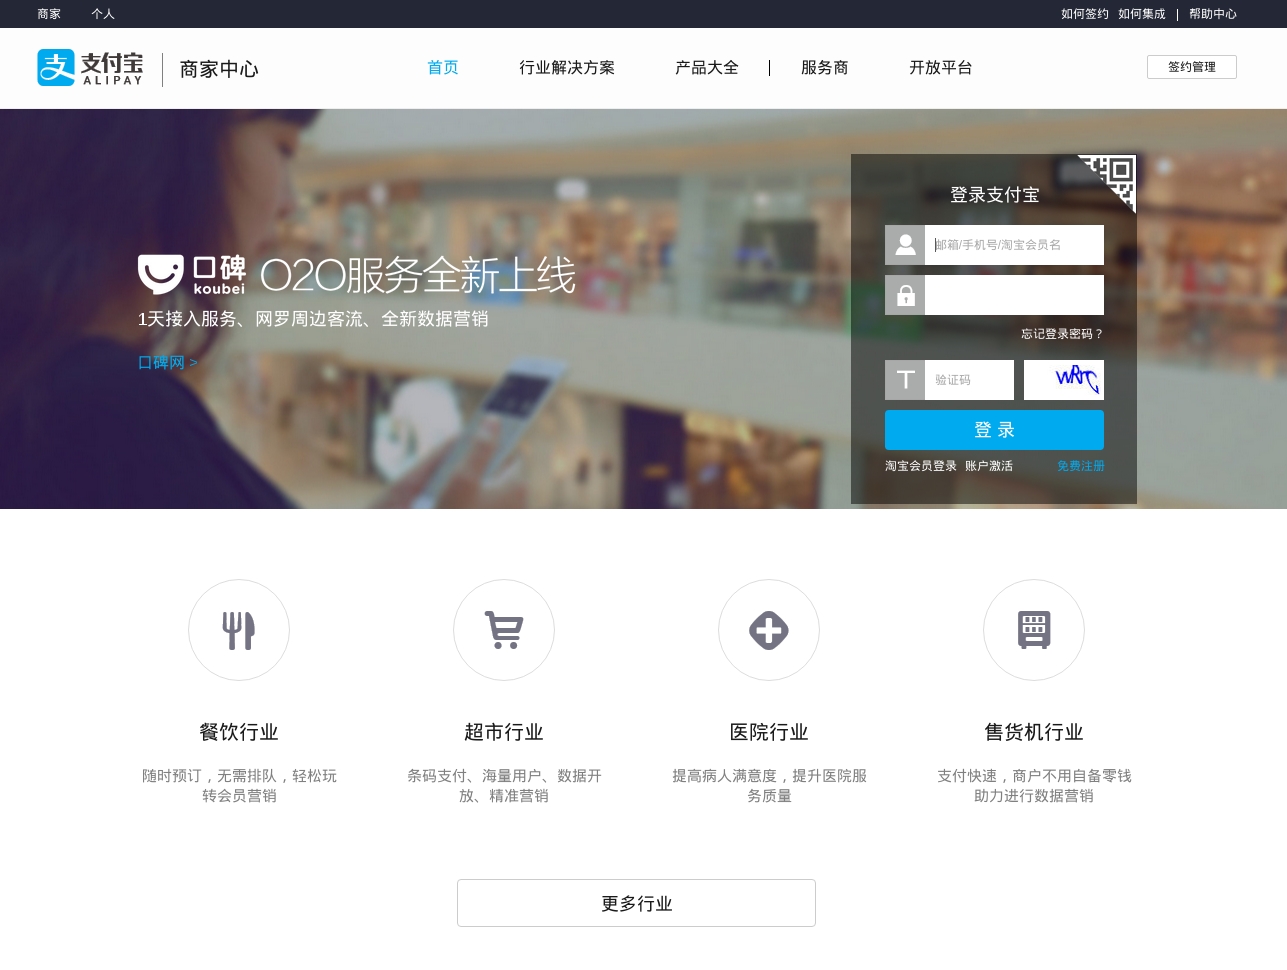 Alipay: Der Dienst des Alibaba Group bietet neben Fahrkarten auch